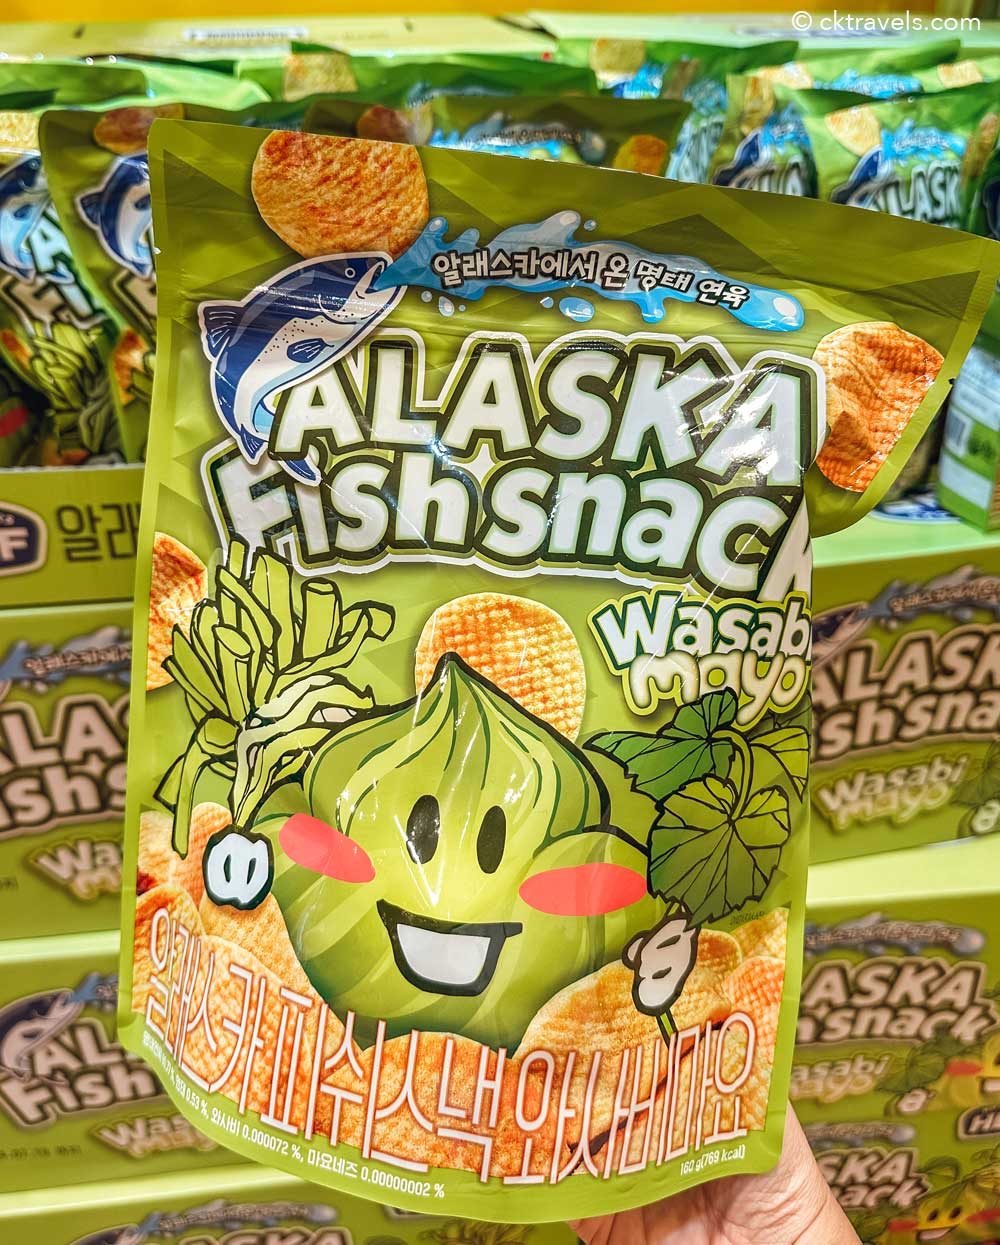 HBAF Alaska Fish Snack wasabi mayo